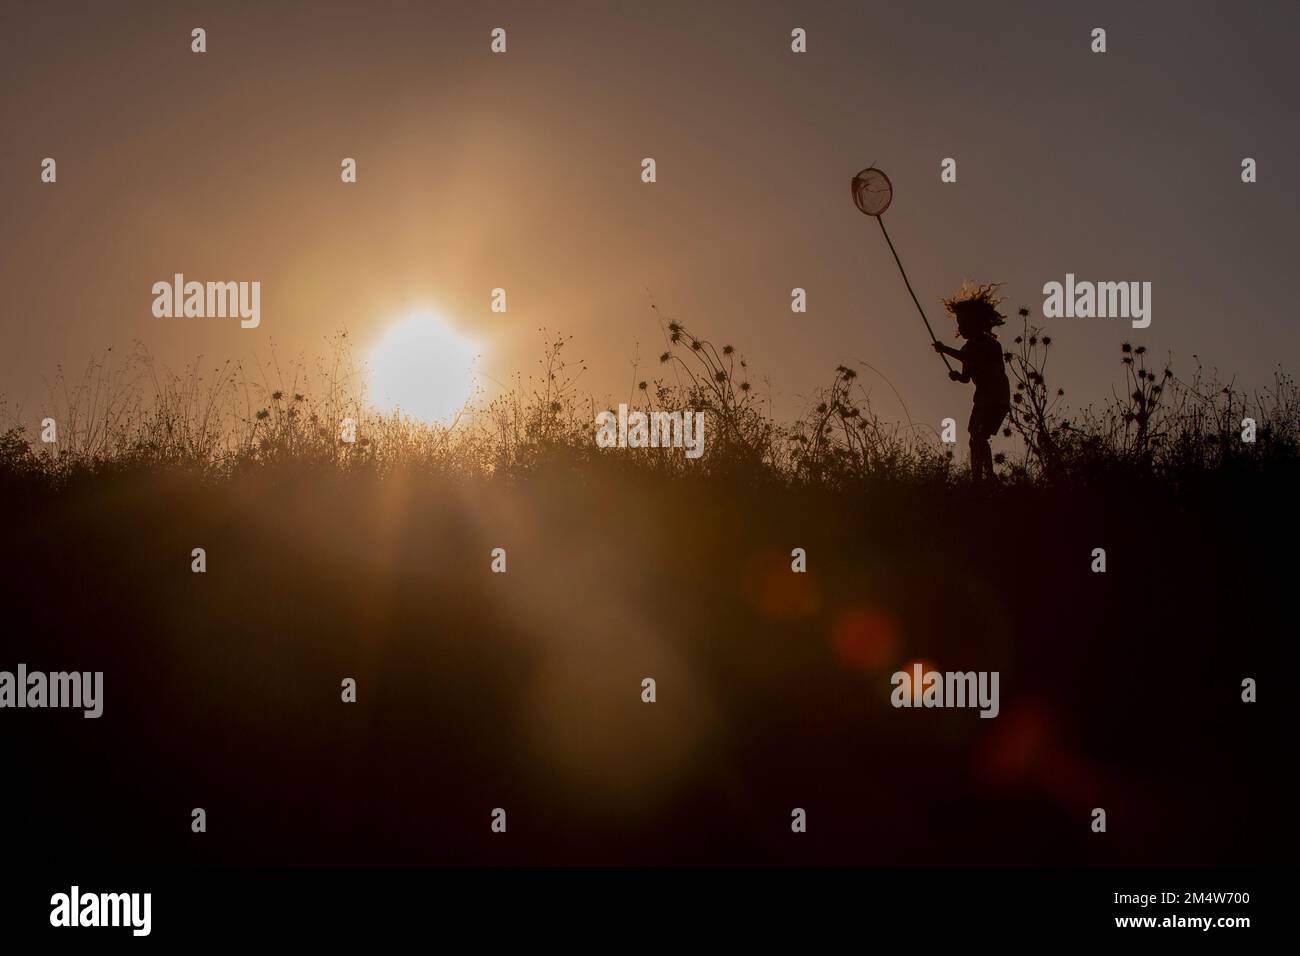 Bambino con rete a farfalla in un campo con silhouette al tramonto (modello rilasciato) Foto Stock